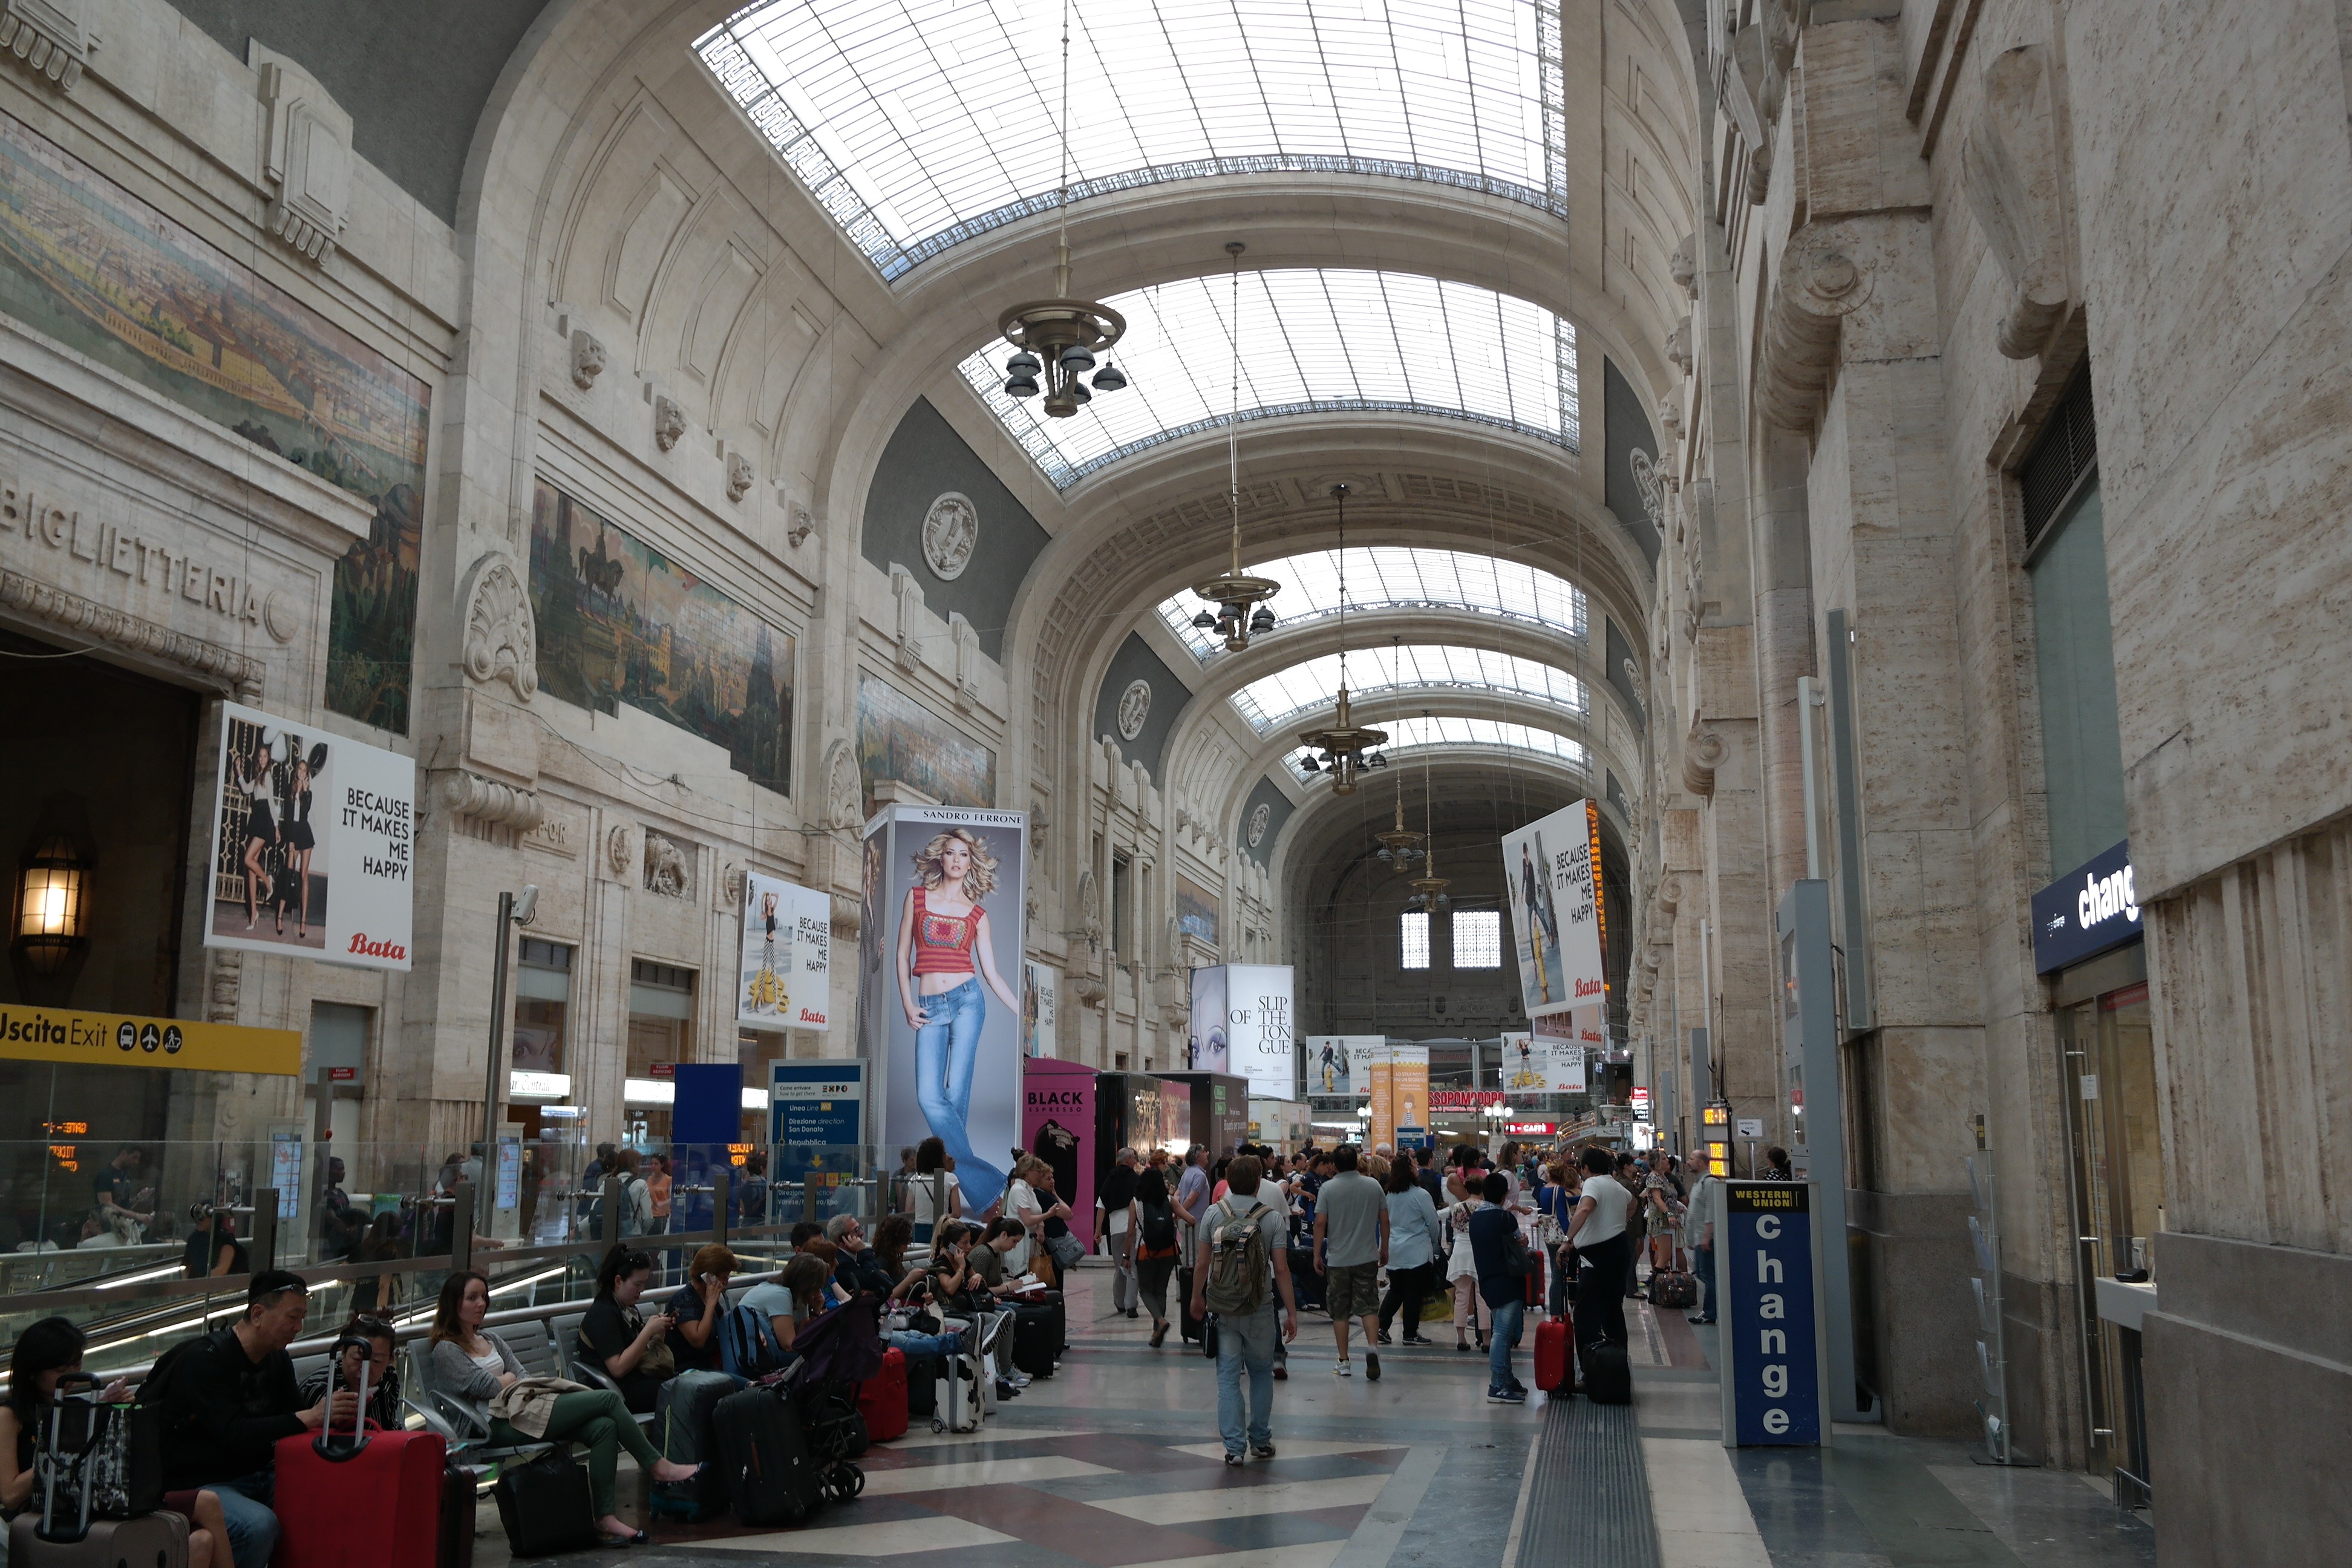 Stazione Centrale, Milan